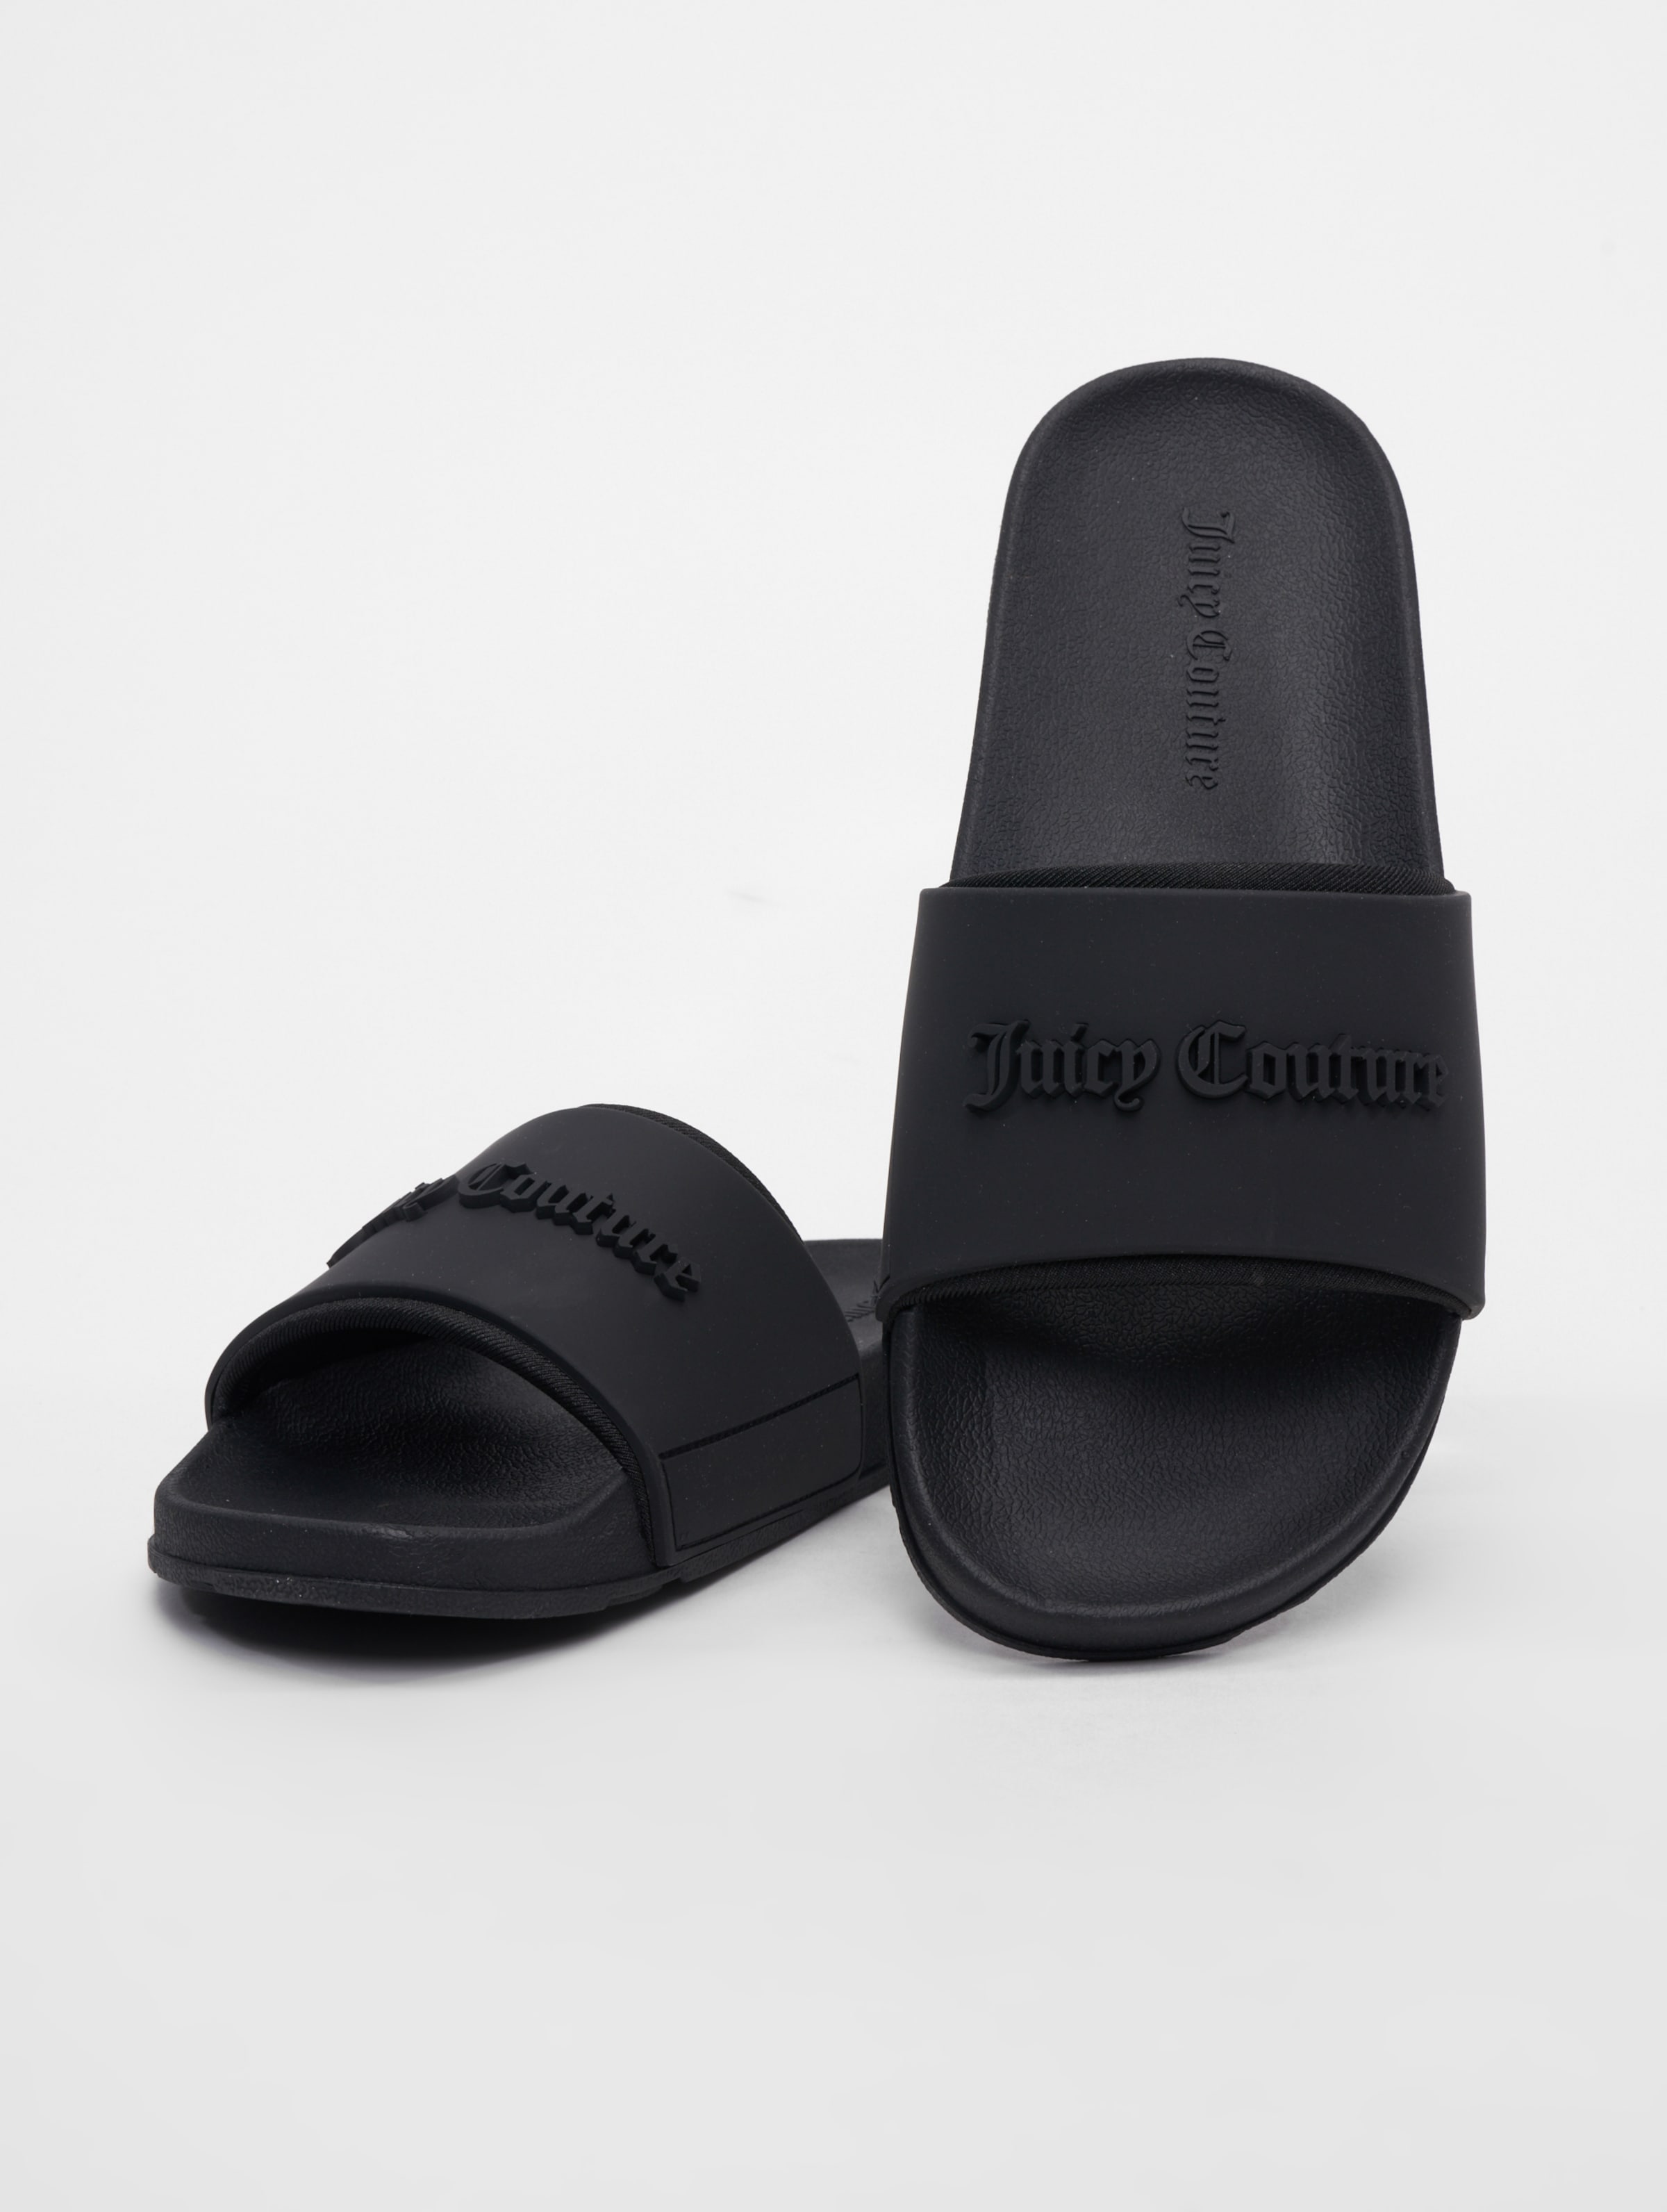 Juicy Couture Breanna Embrosse Sandalen Frauen,Unisex op kleur zwart, Maat 40